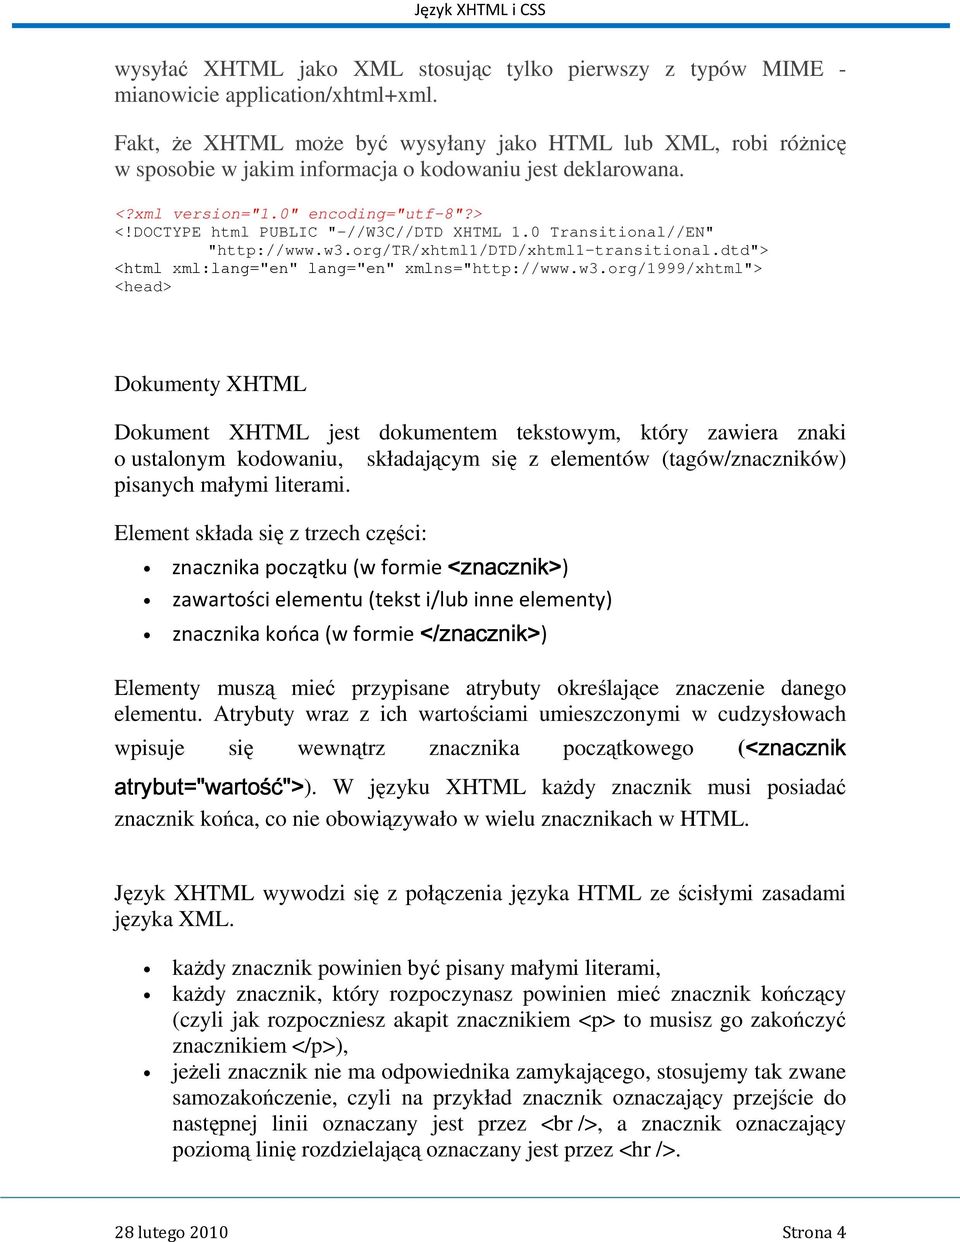 DOCTYPE html PUBLIC "-//W3C//DTD XHTML 1.0 Transitional//EN" "http://www.w3.